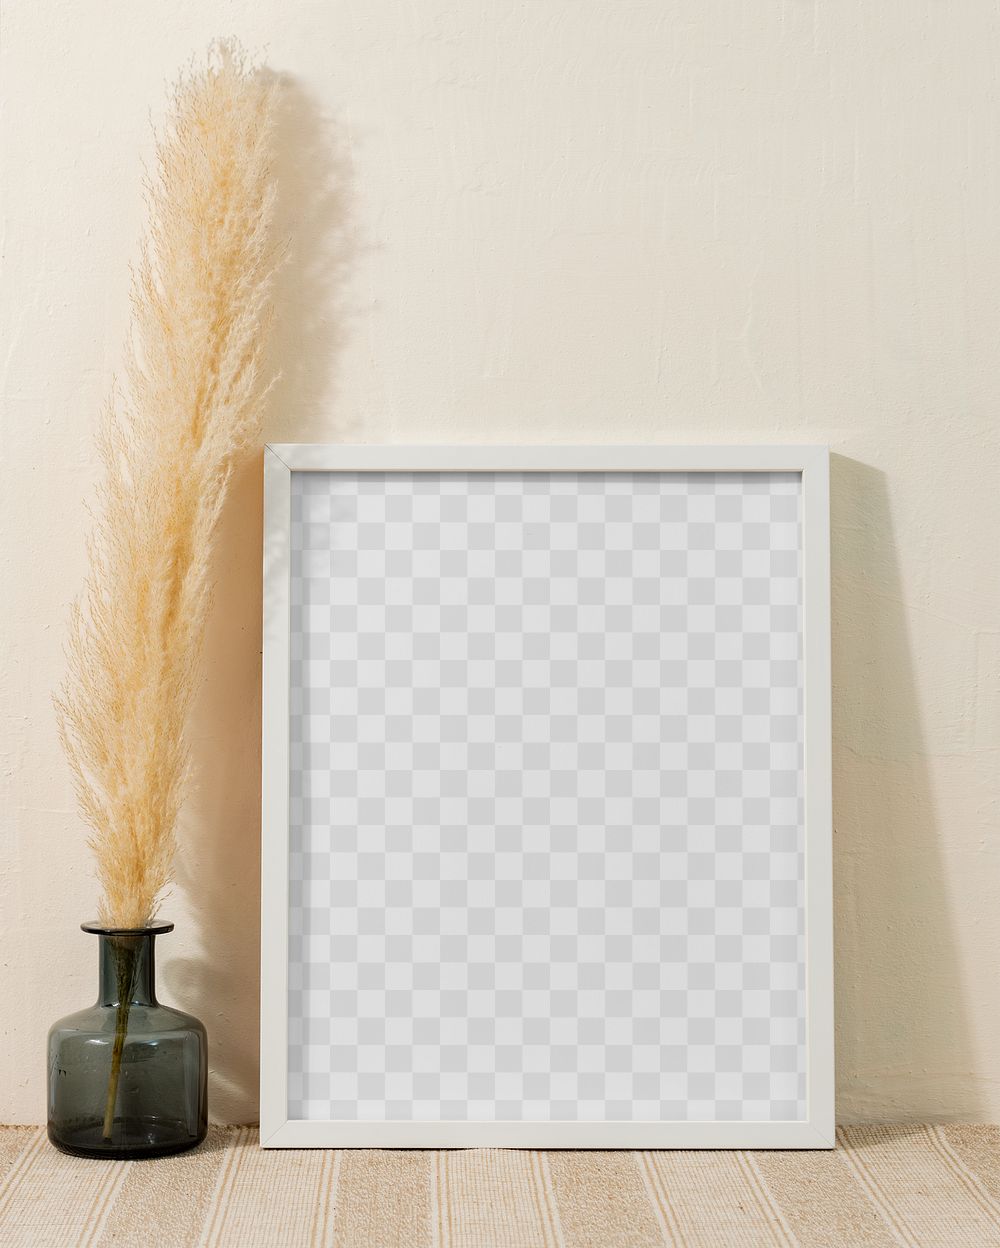 Photo frame mockup png, with flower vase decoration